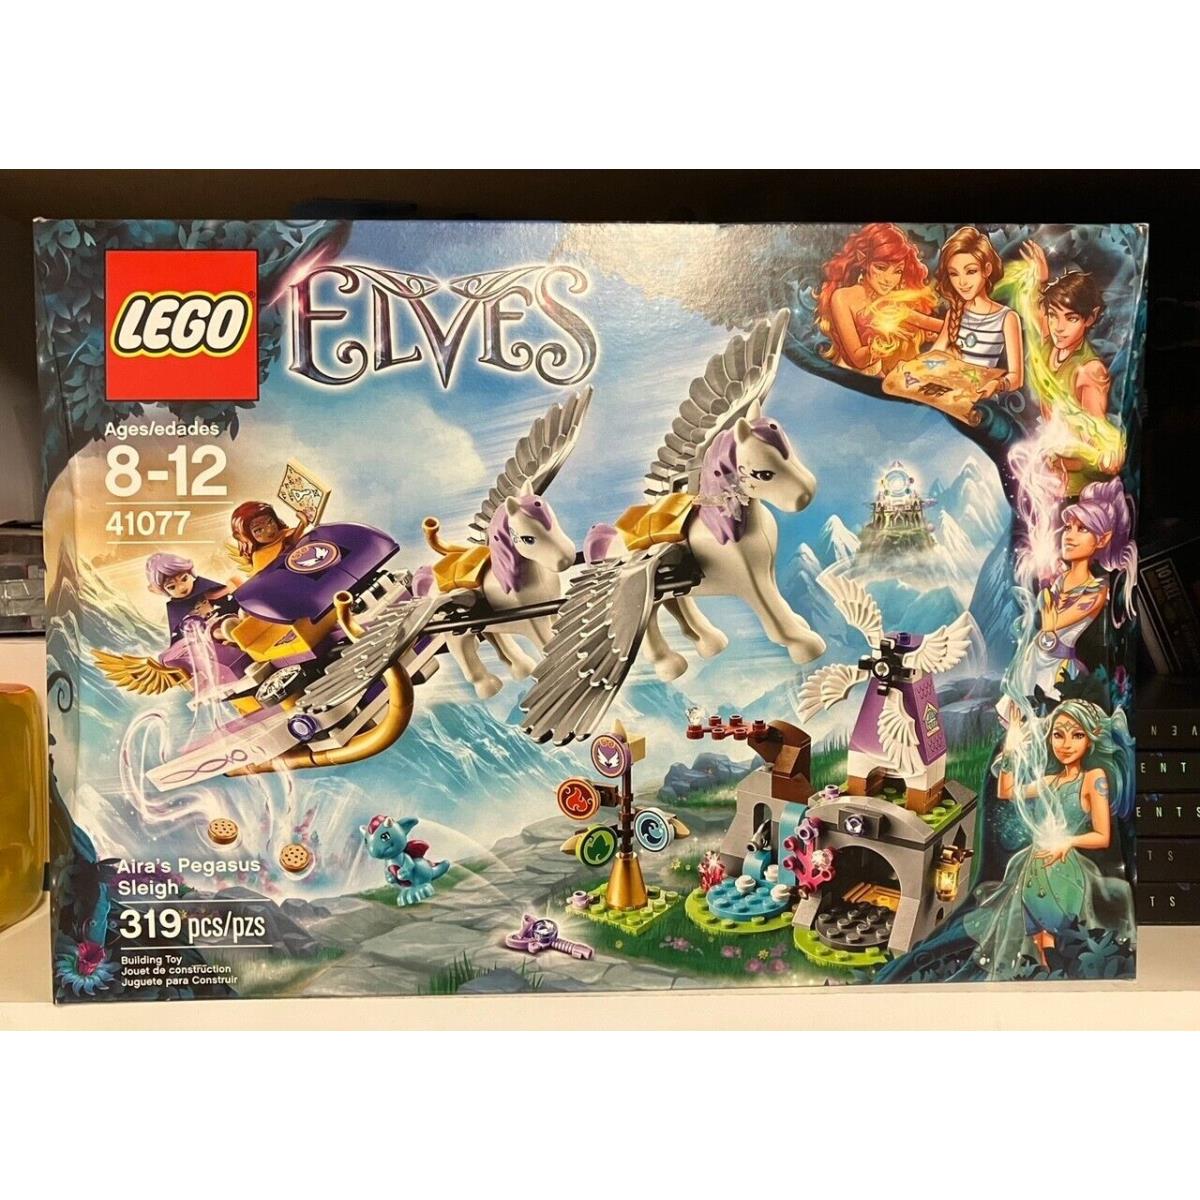 Lego 41077 Elves Aira`s Pegasus Sleigh 319 Pcs